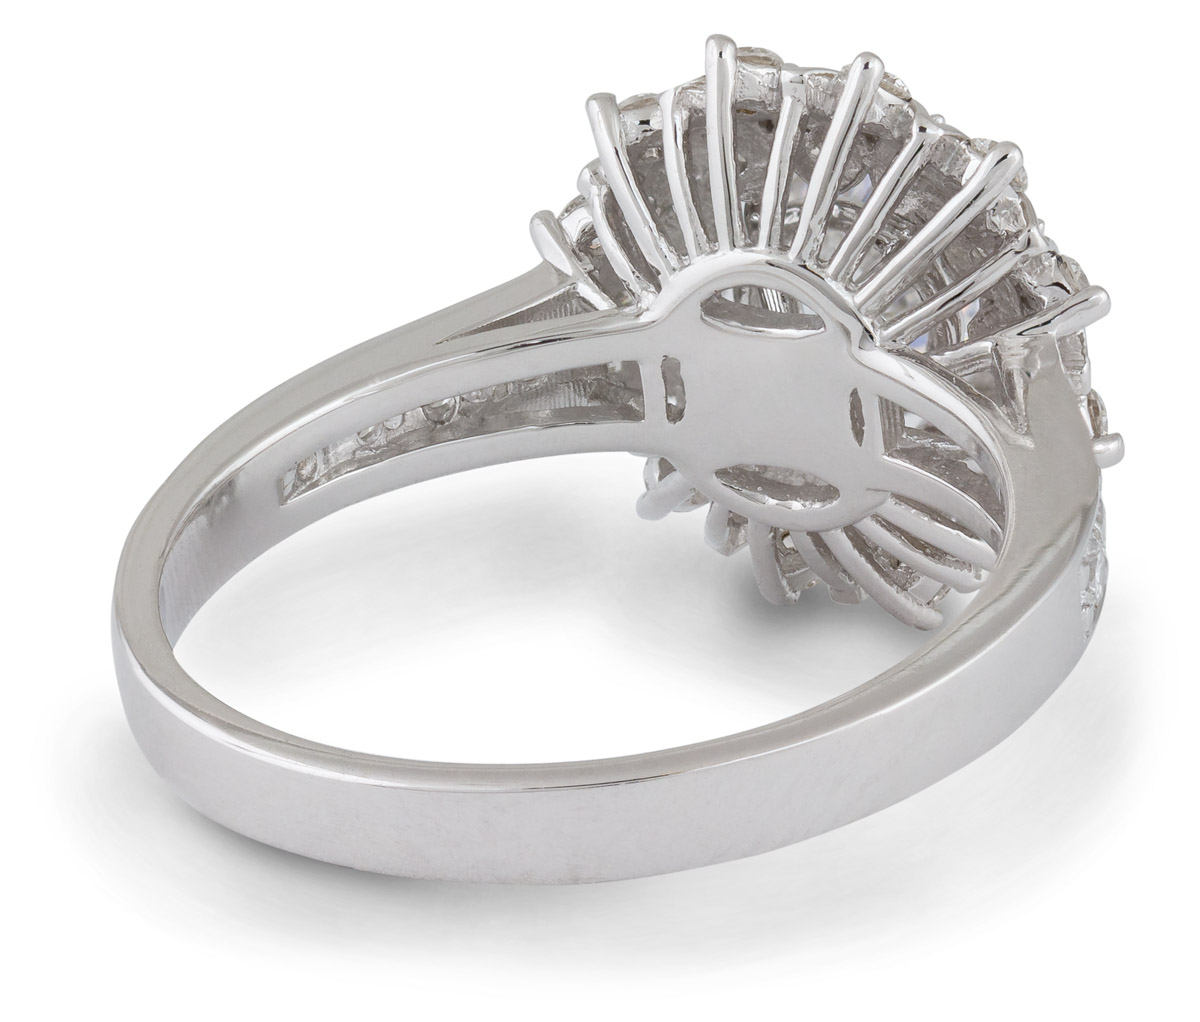 Vintage Style Sunburst Halo Engagement Ring - Back